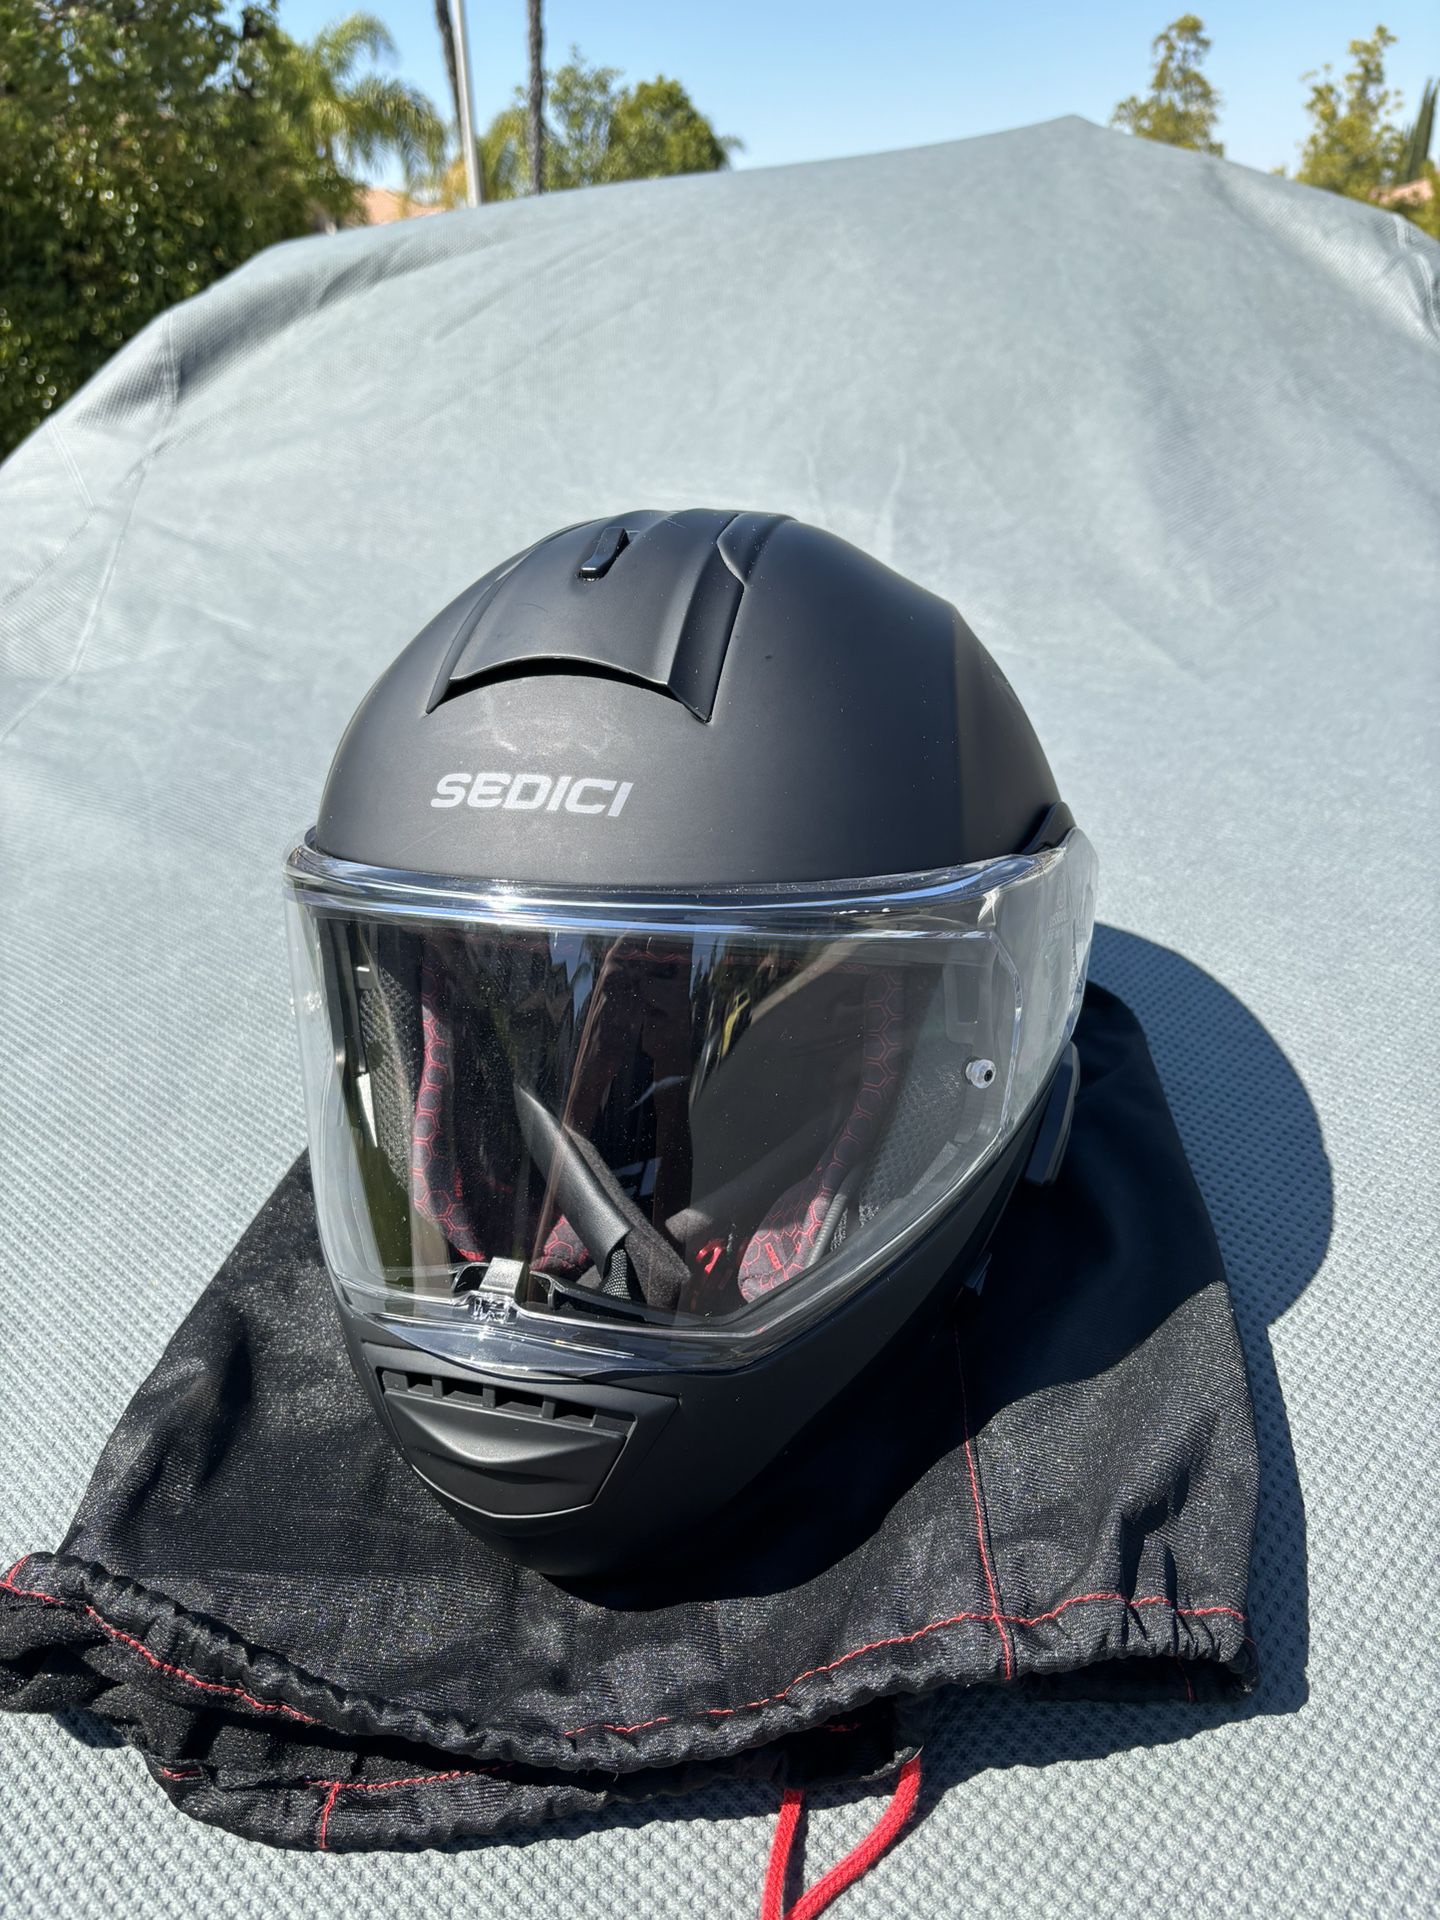 Sedici Xxxl Motorcycle helmet